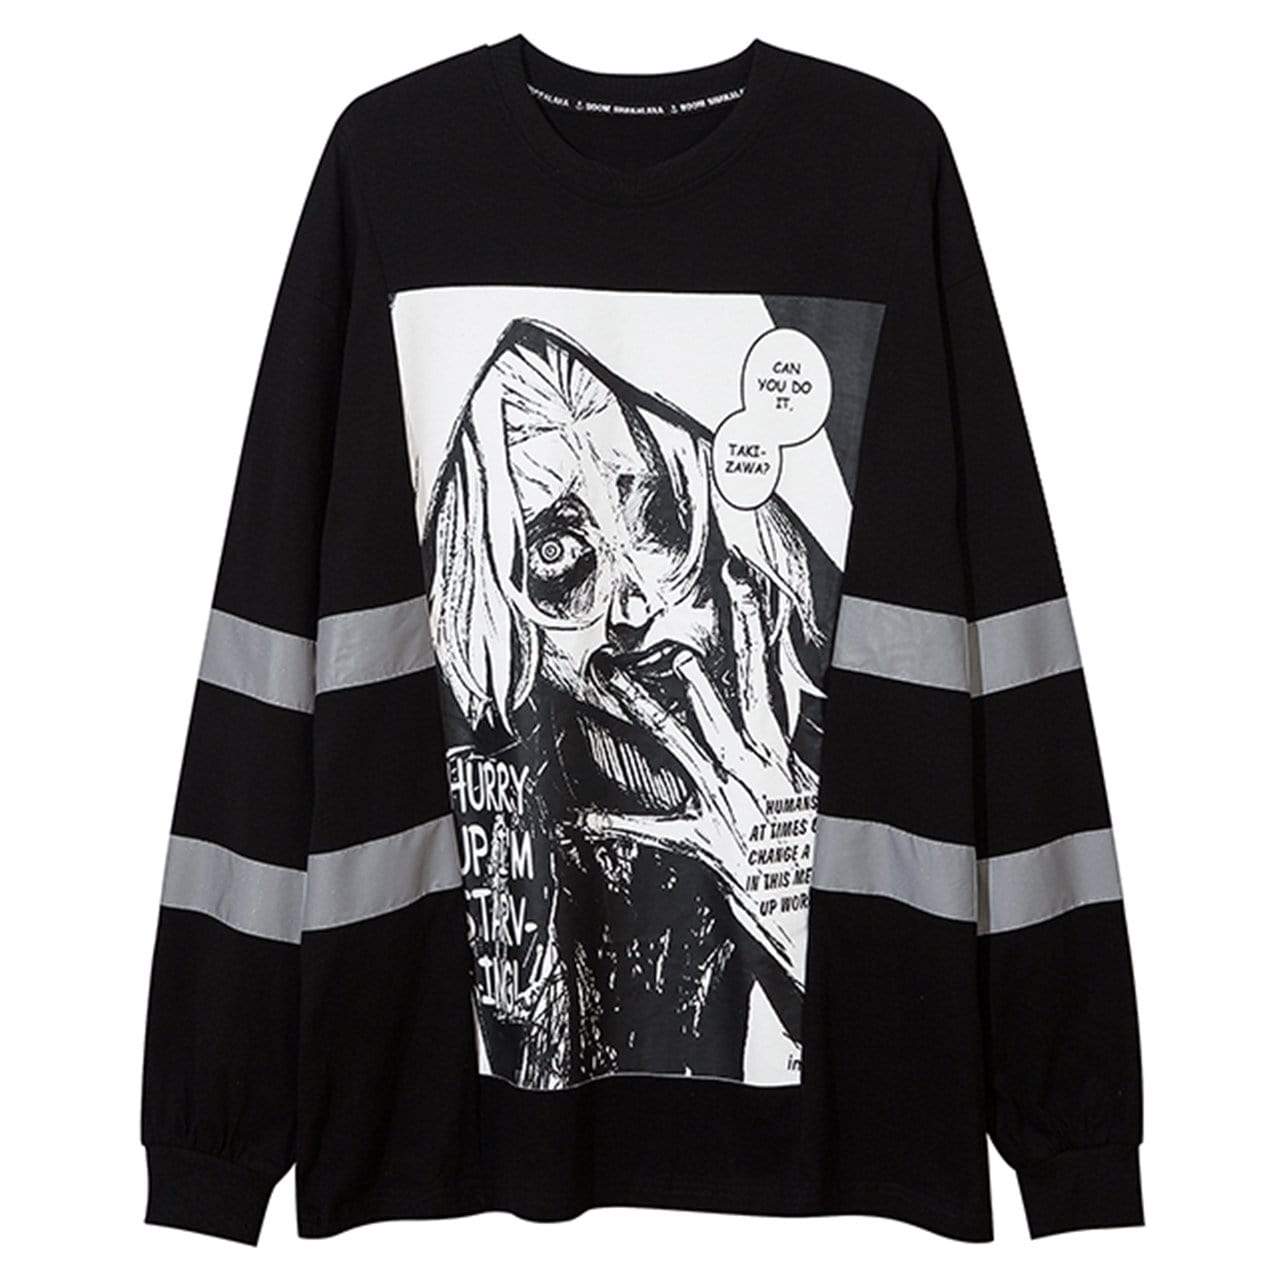 Dark Reflective Demon Graphic Sweatshirt